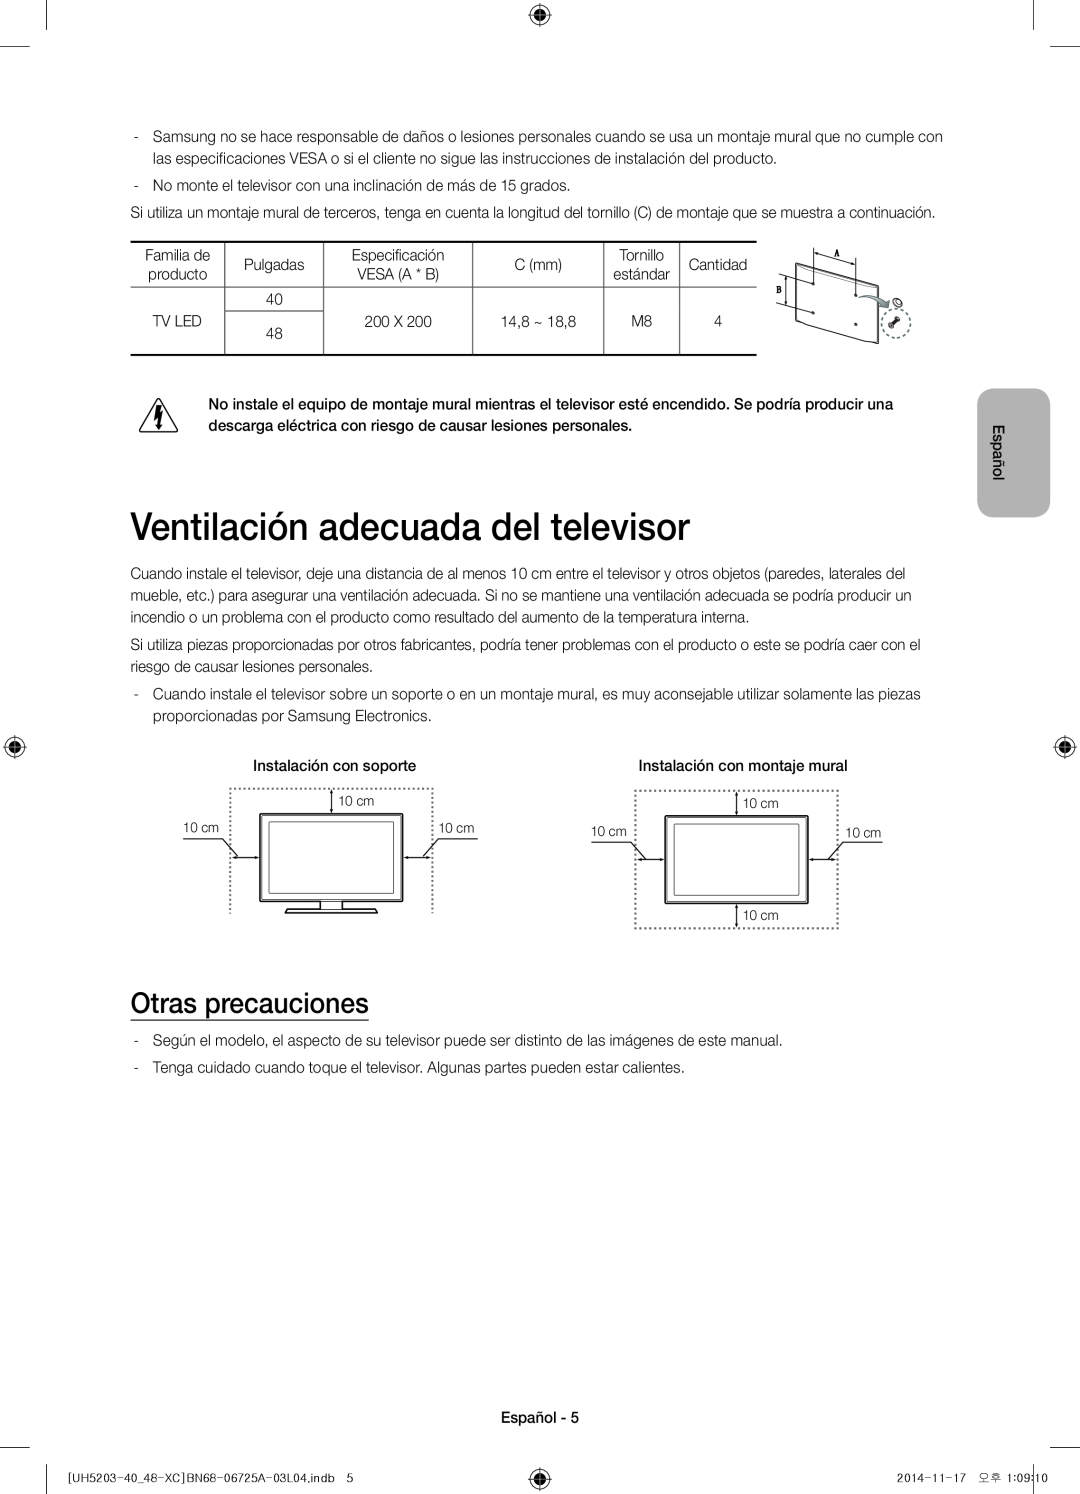 Samsung UE48H5203AWXXC, UE40H5203AWXXC manual Ventilación adecuada del televisor, Otras precauciones 